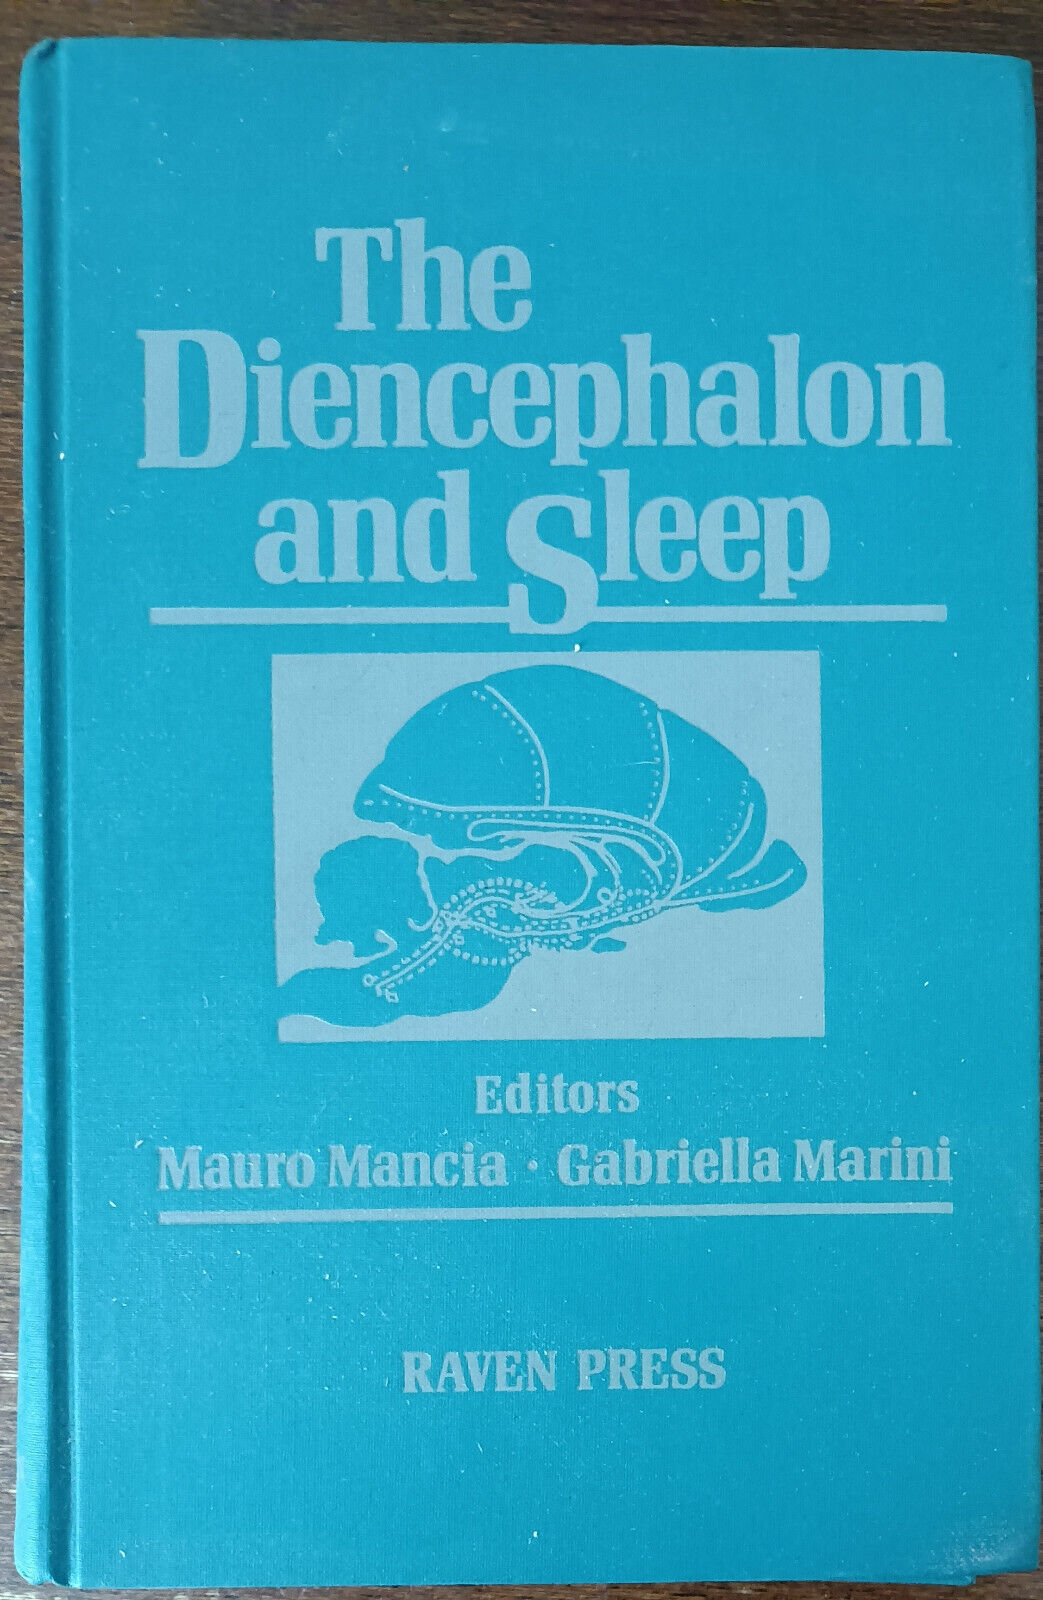 The diencephanlon and sleep-Mauro Marcia, Gabriella Marini-Raven press - 1990-A